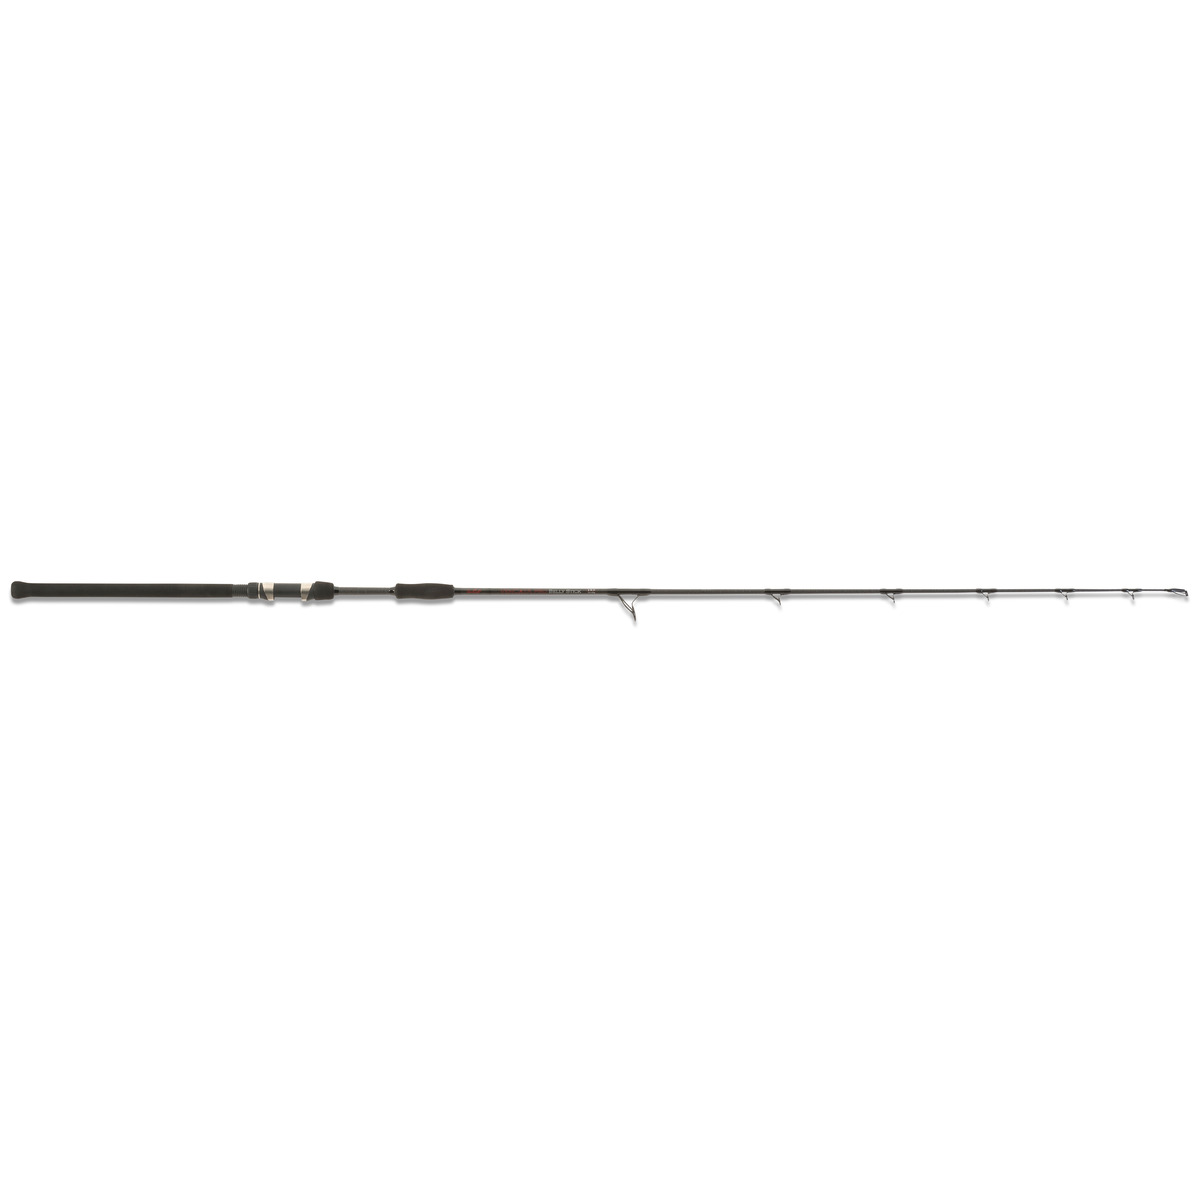 Unicat Vencata Pro Belly Stick - 160 -600 g